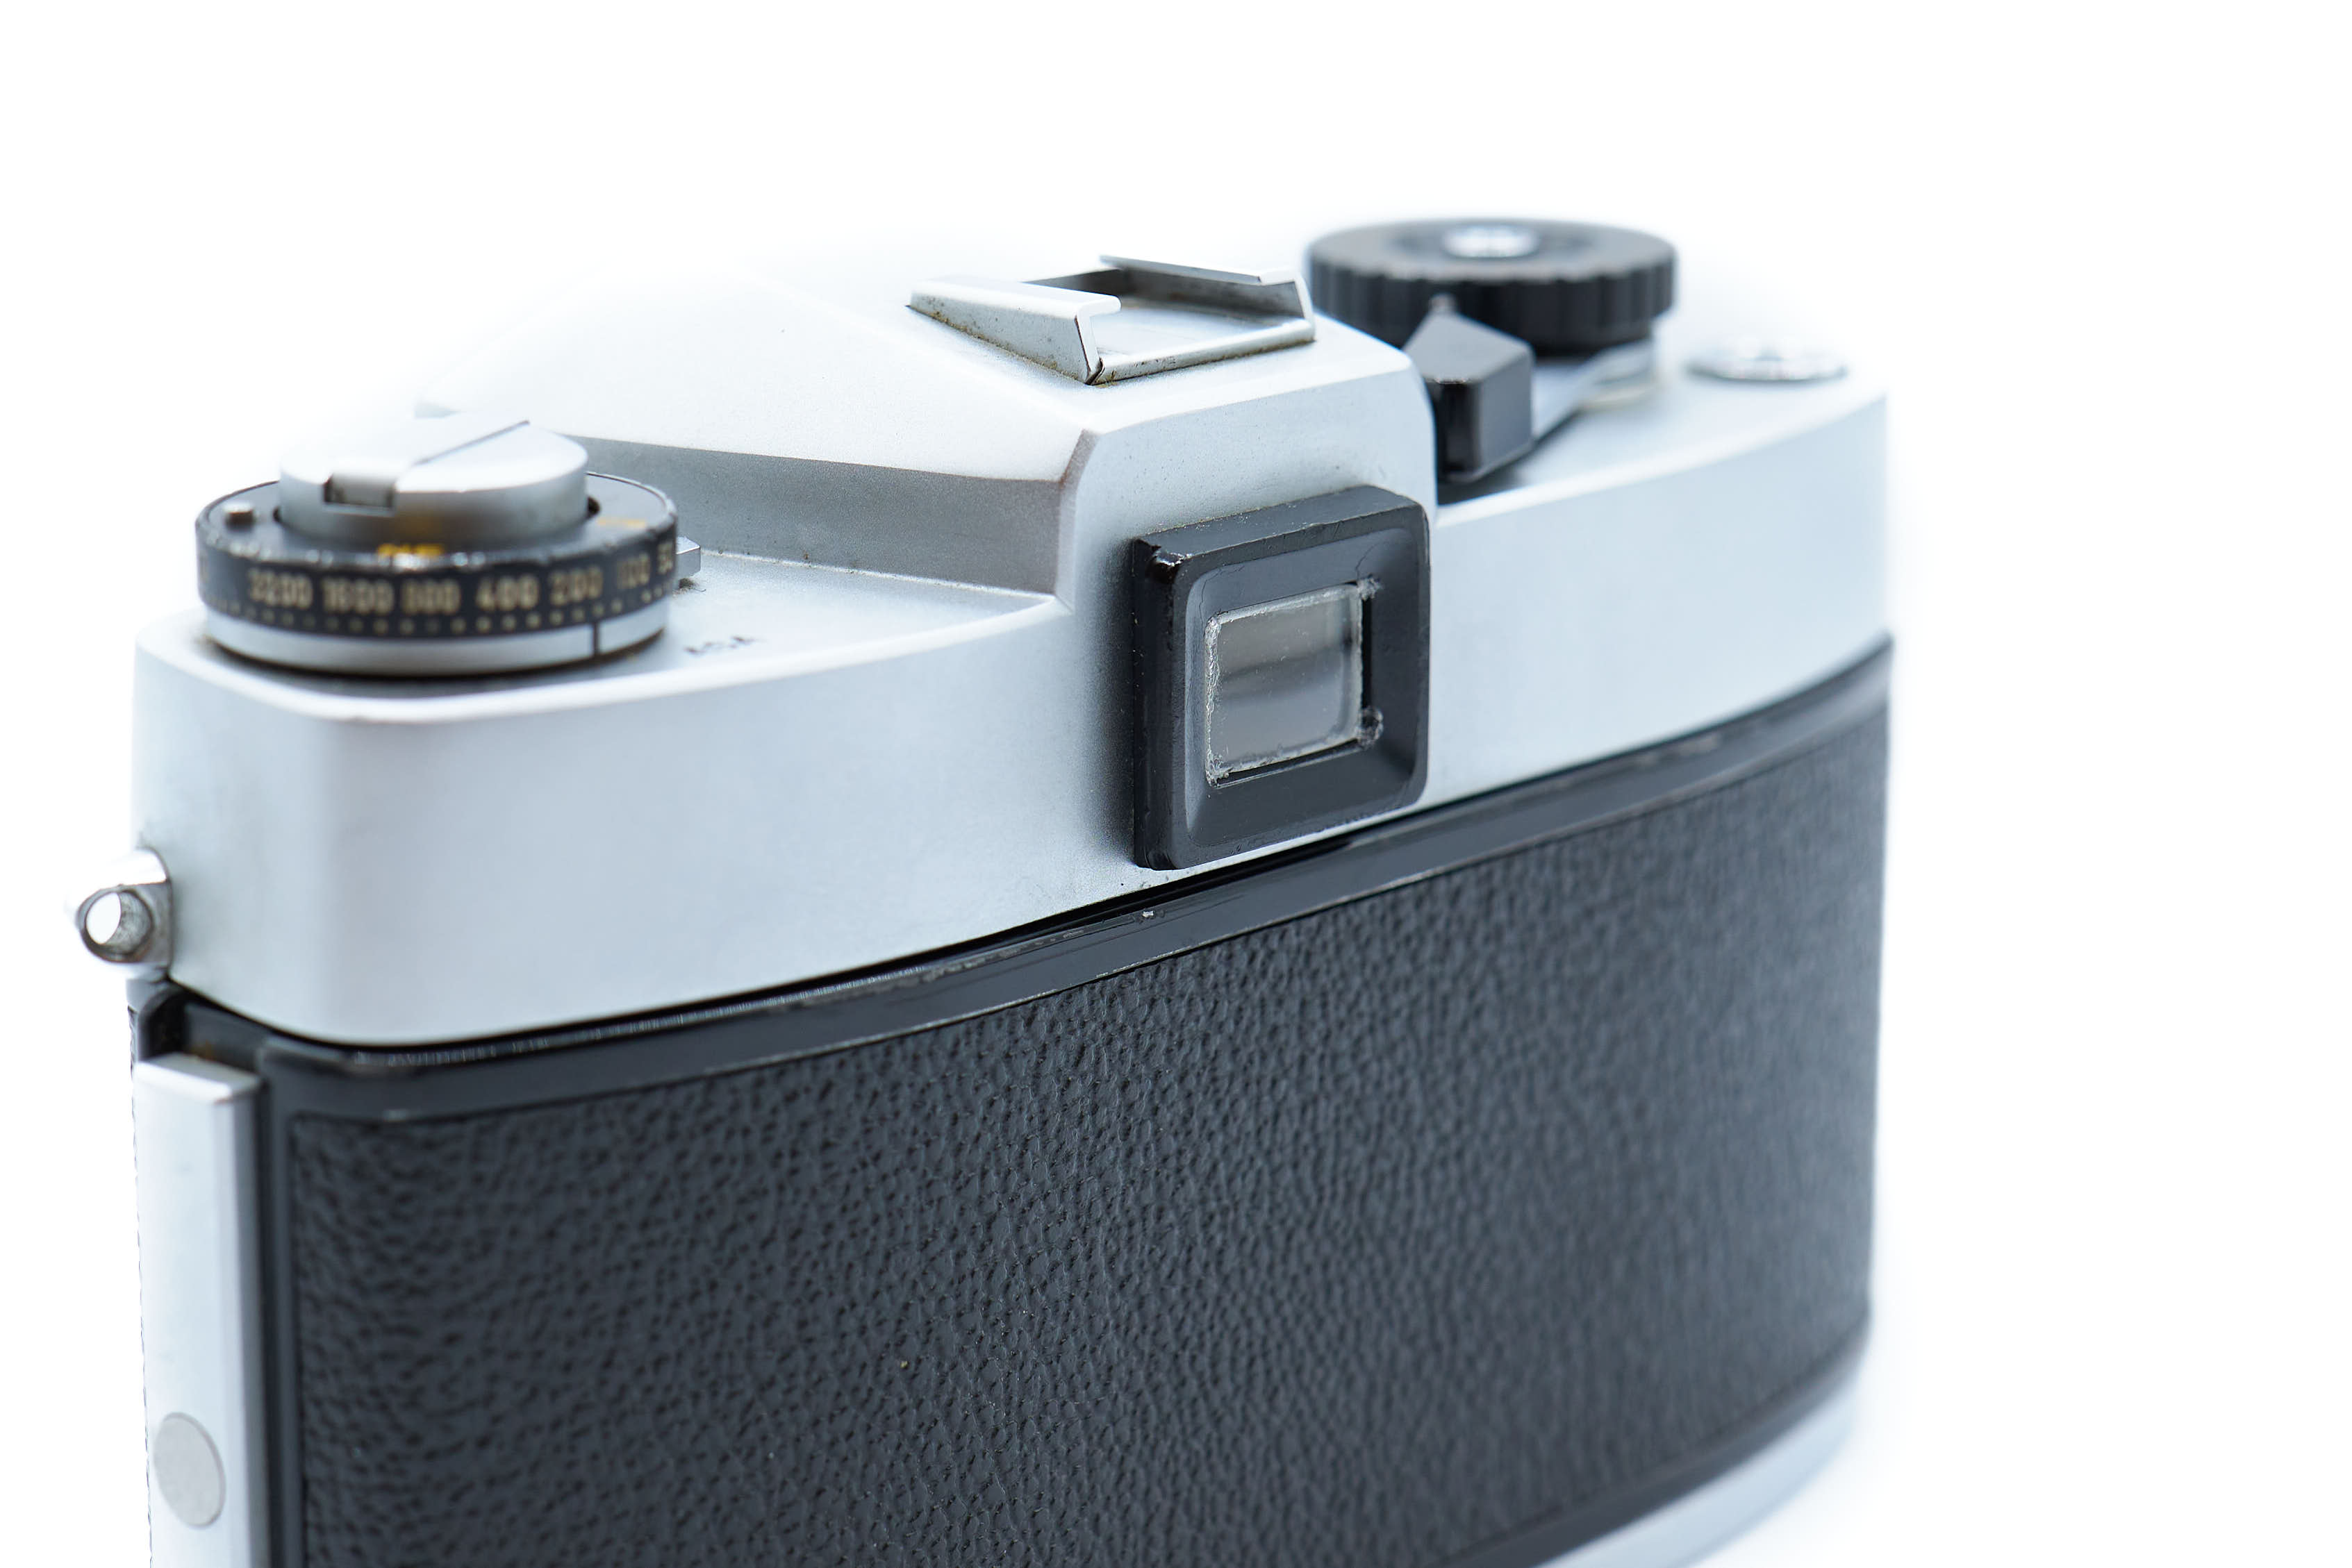 Leicaflex SL Silver